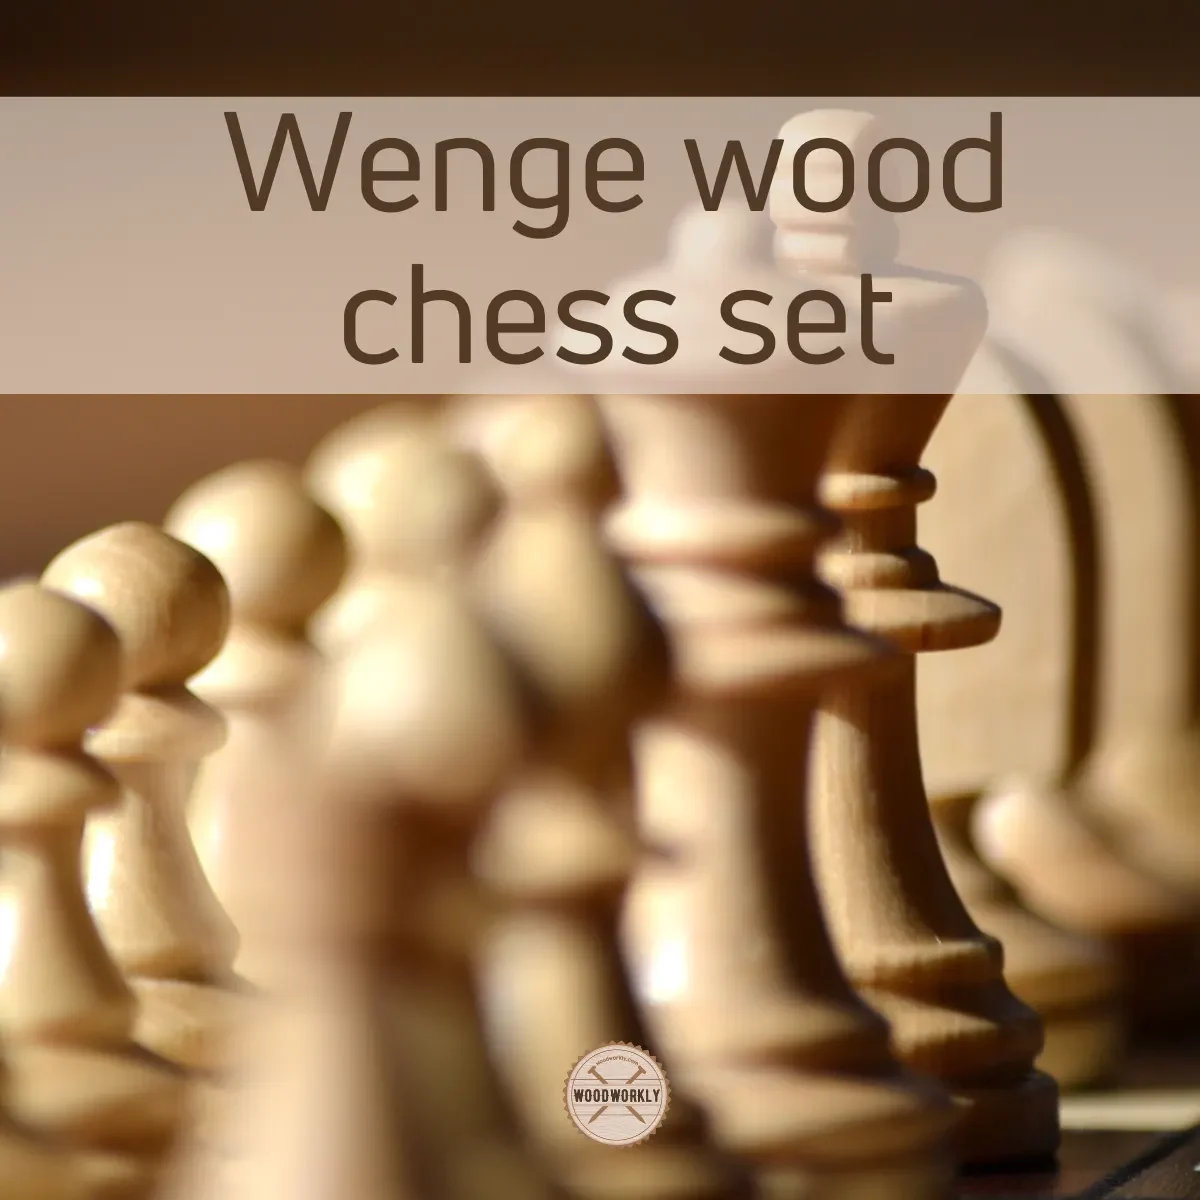 Wenge wood chess set